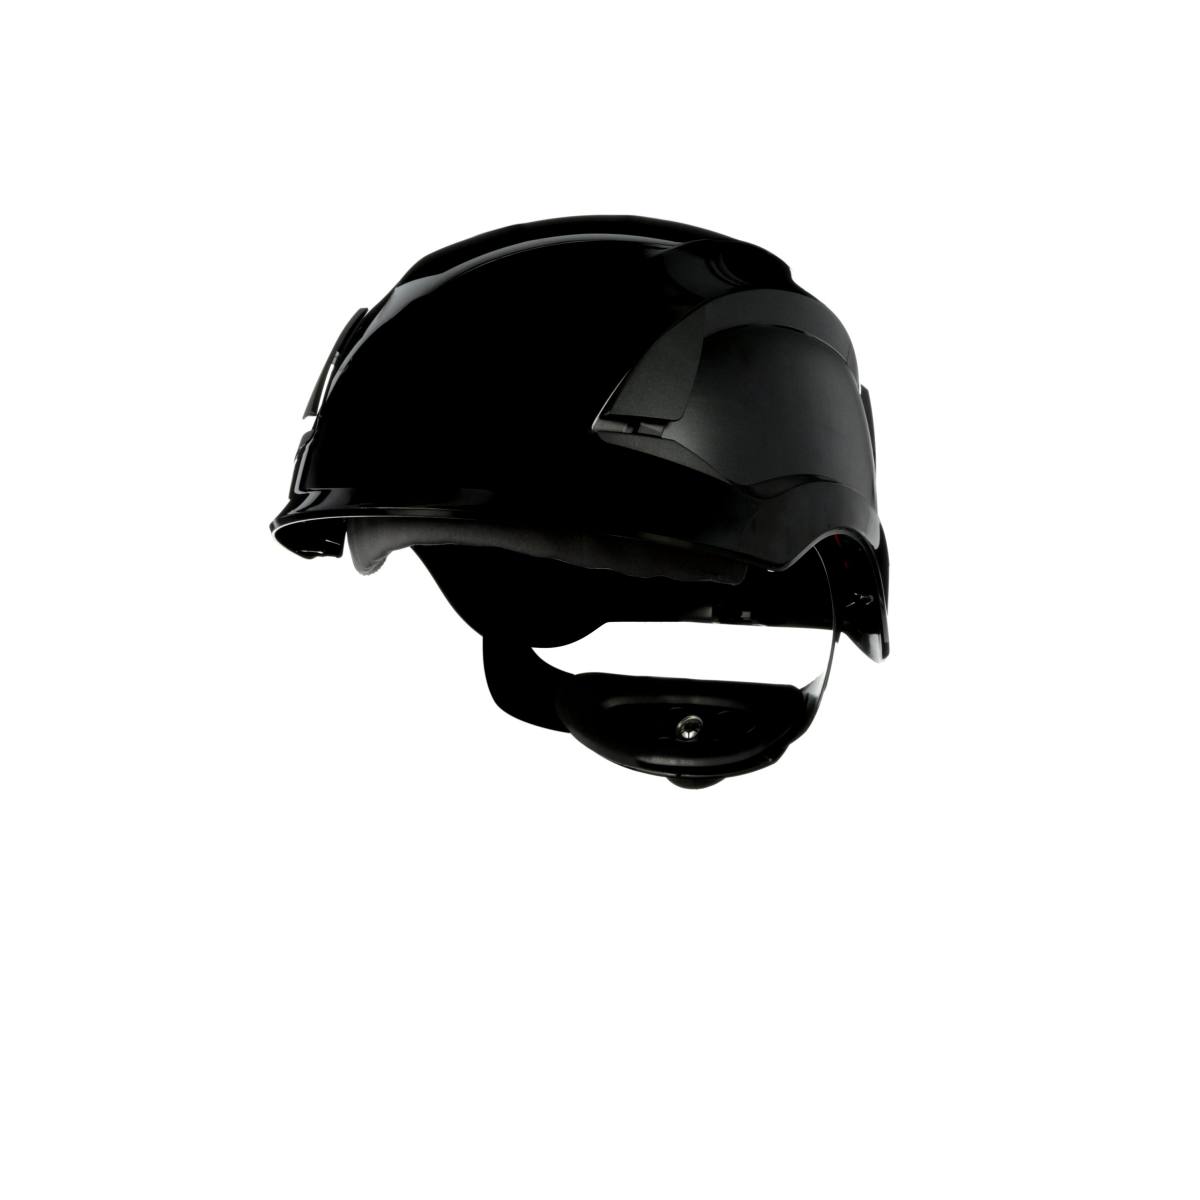 3M SecureFit casque de protection, X5512V-CE, noir, ventilé, CE